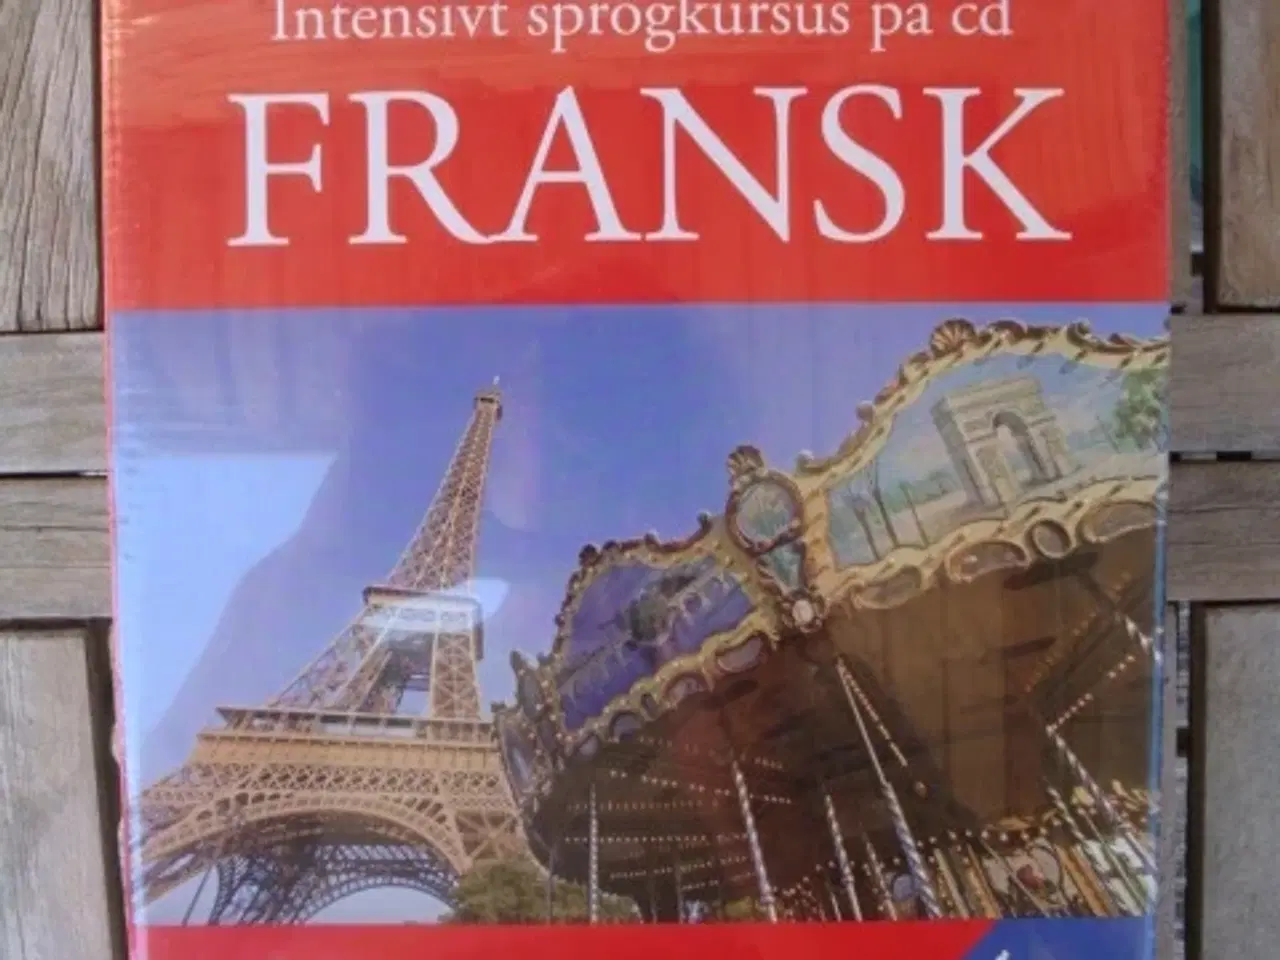 Billede 1 - FRANSK Intensivt sprogkursus på cd